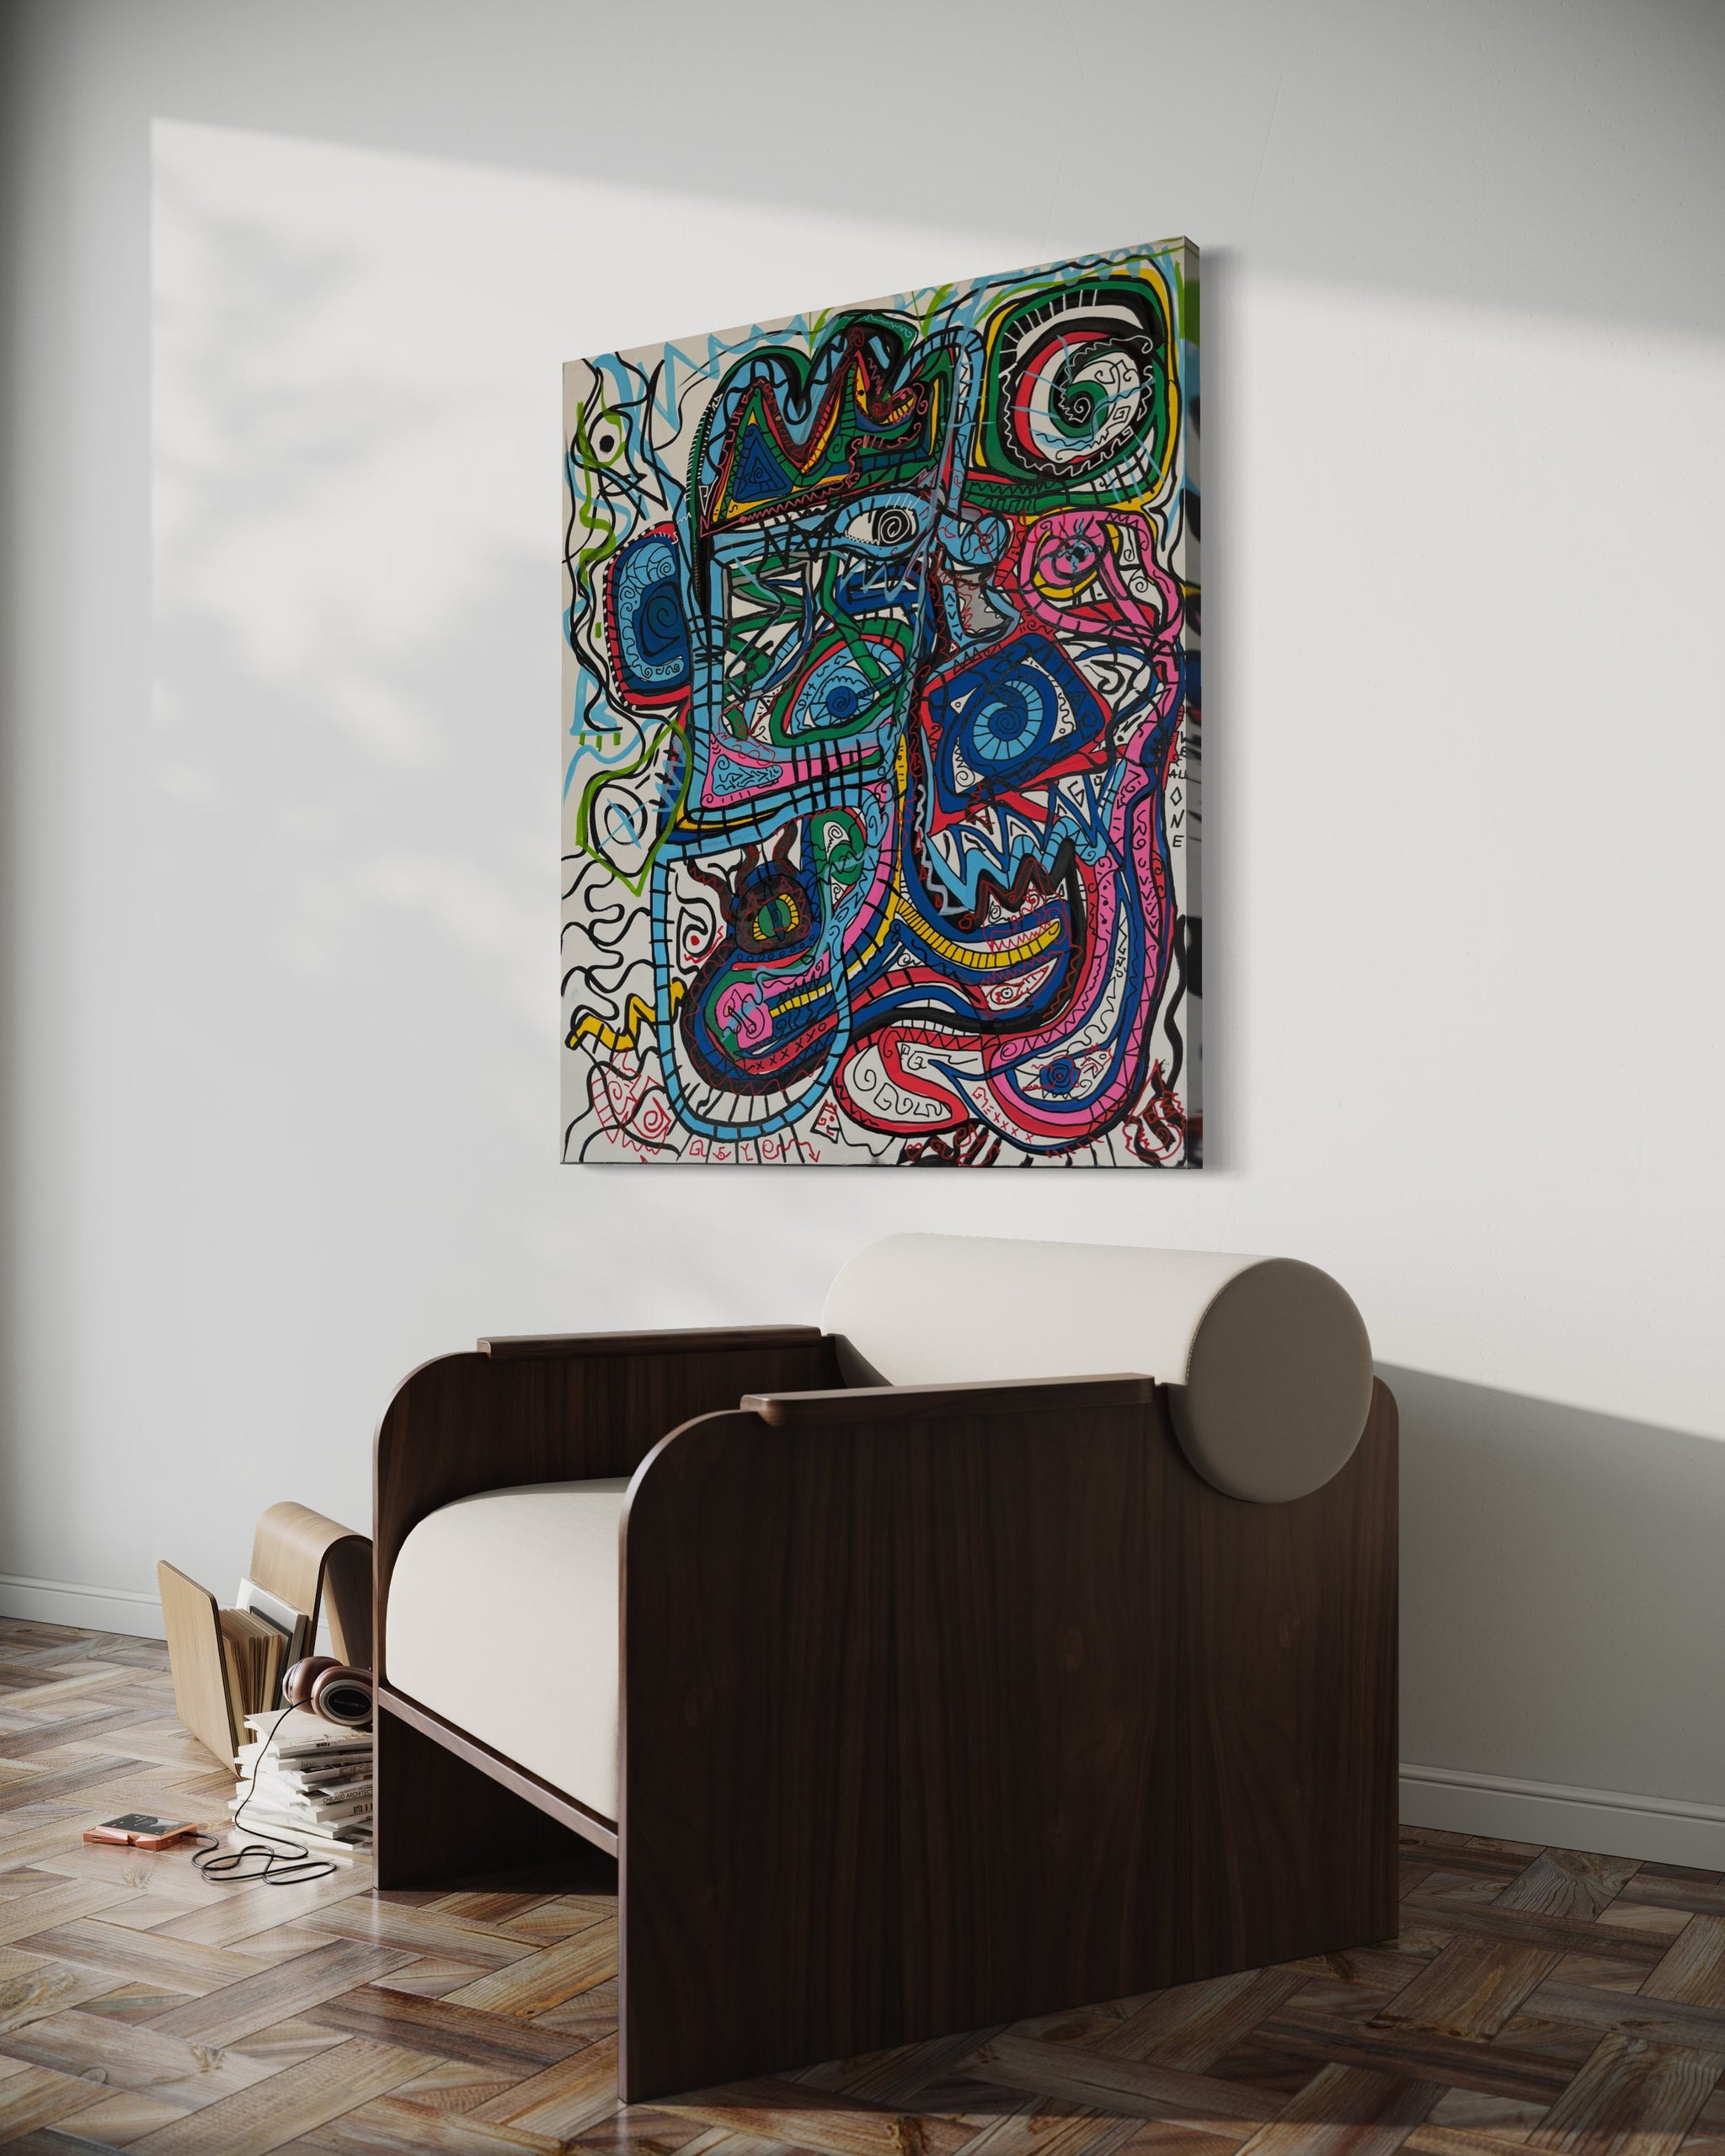 Sven Liesy mit seiner „Omage an Picasso“ exklusive bei POSH VISION  Maße: 120x100cM;&nbsp;45 mm Holzrahmen  Material: Acryl auf Leinwand